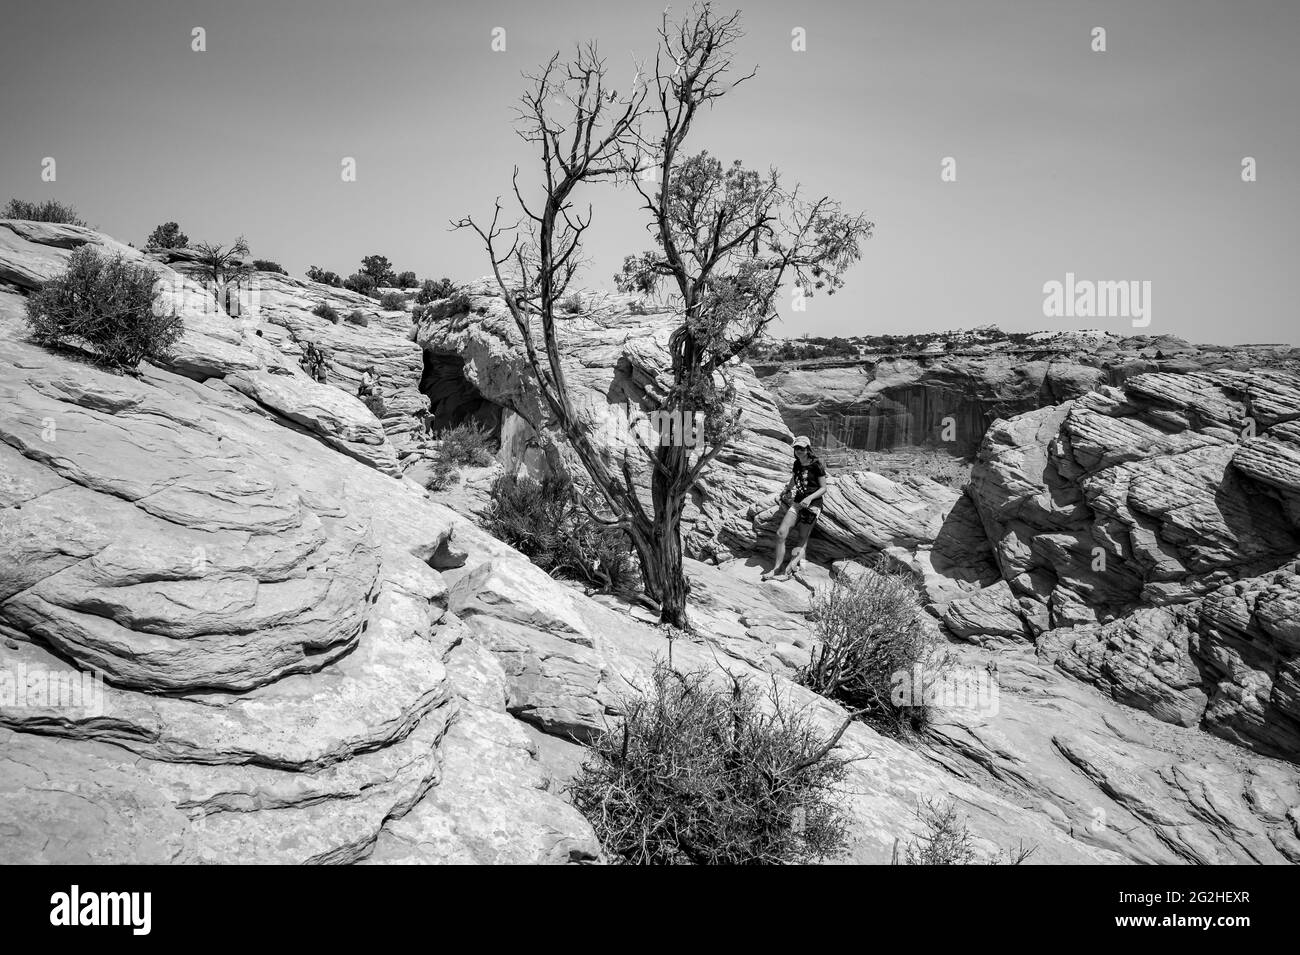 Mesa Arch. Arche en grès au bord de la falaise qui offre une vue imprenable sur le paysage du canyon en roche rouge. Parc national de Canyonlands, Utah, États-Unis Banque D'Images